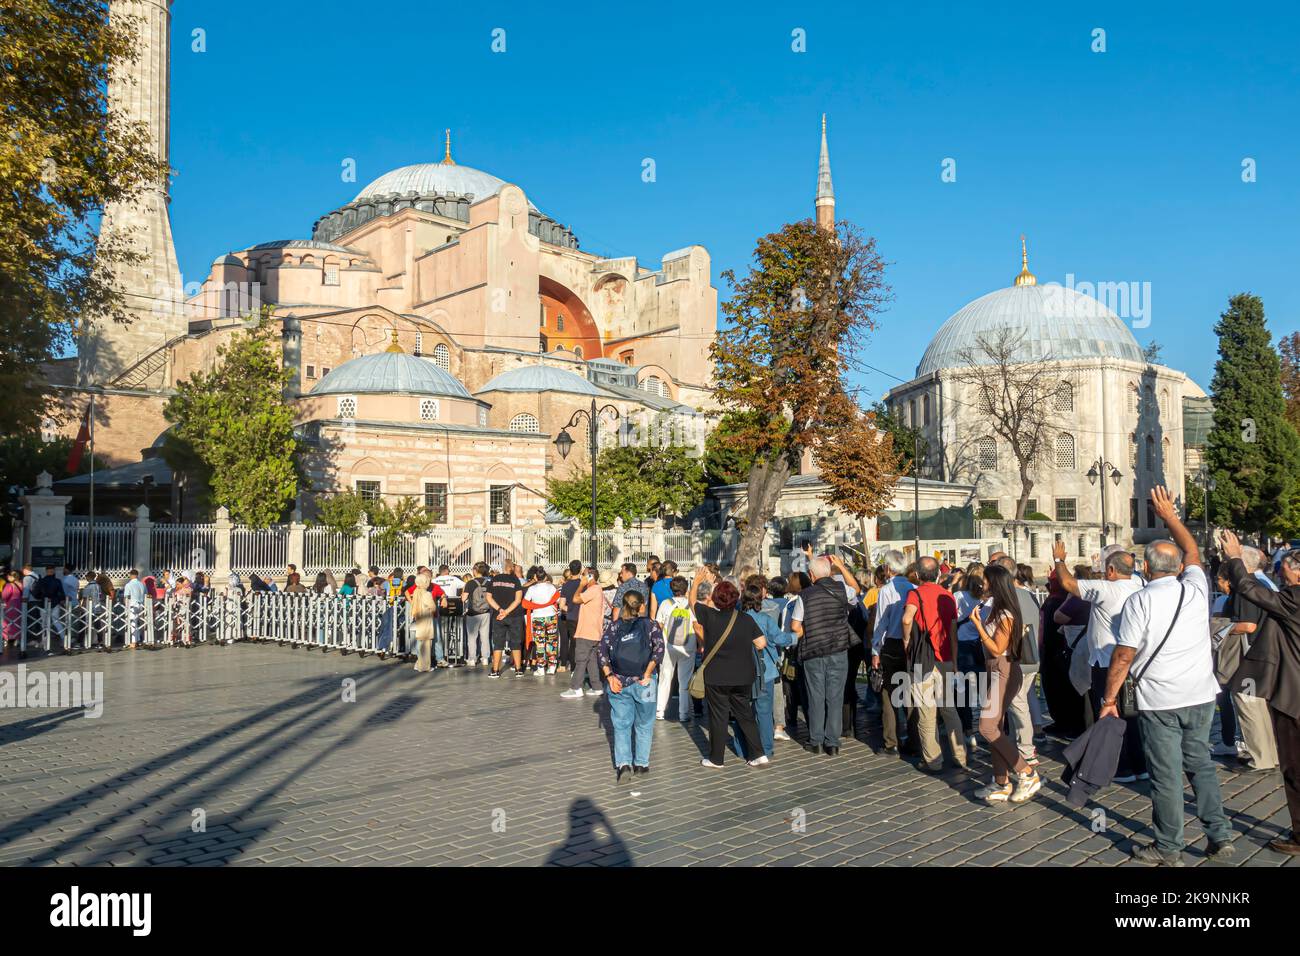 Touristen stehen in der Schlange, um die Hagia Sofia Kathedrale zu betreten. Fatih, Istanbul, Türkei. Lange Schlange, um das Wahrzeichen von Istanbul zu besuchen - Sofia Kirche/Moschee. Stockfoto